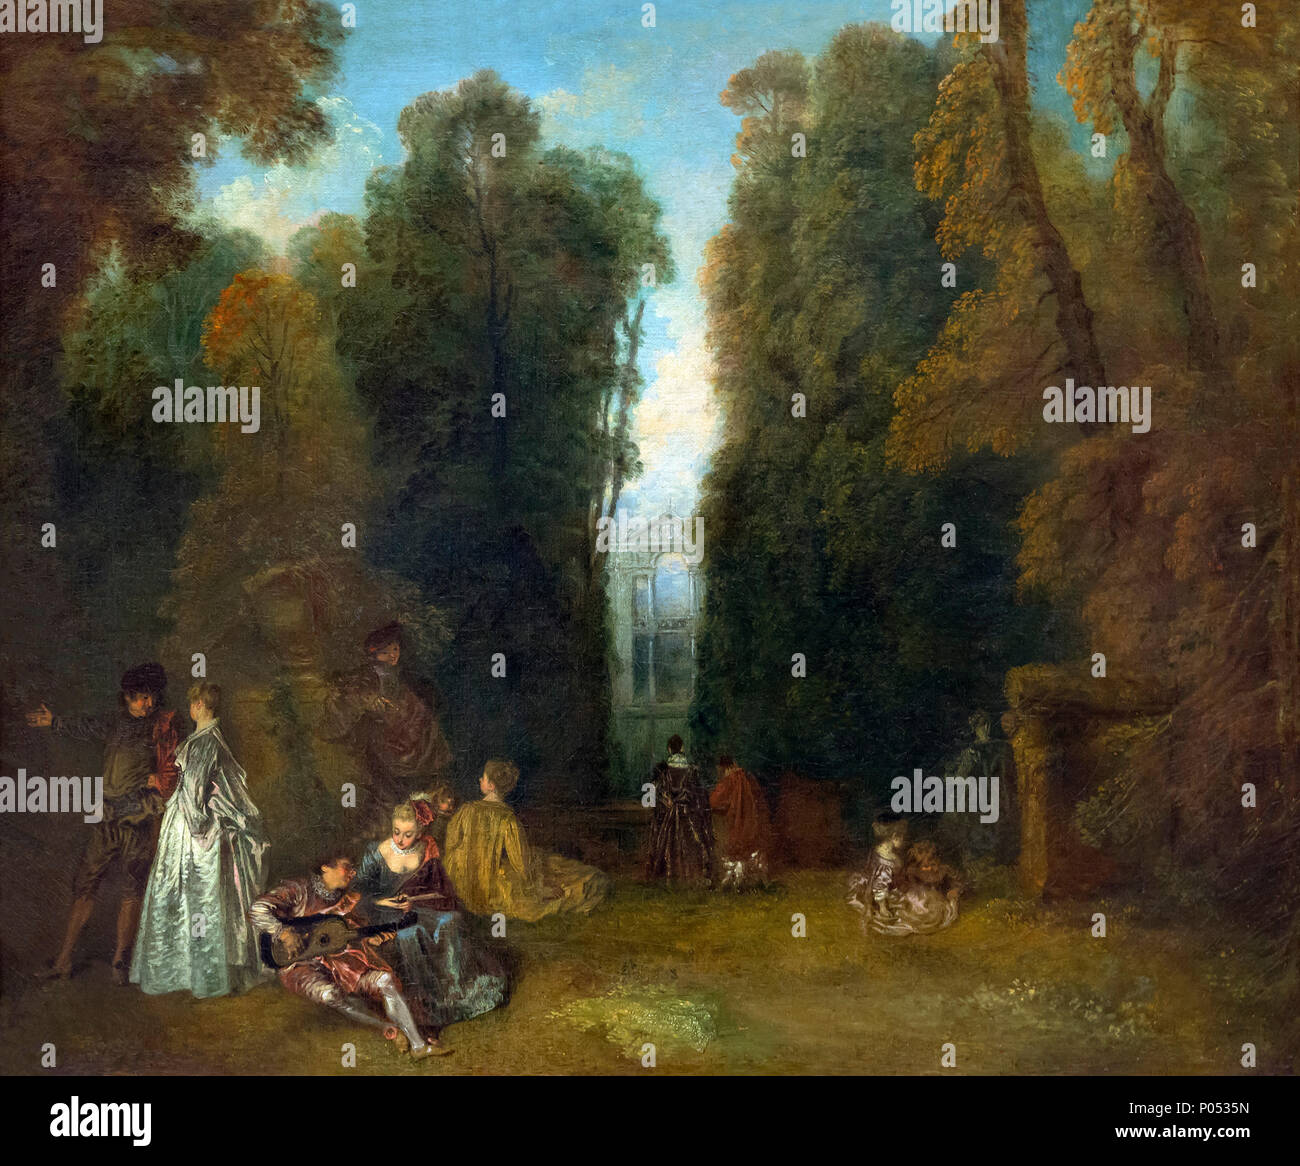 La Perspective, vue à travers les arbres dans le parc de Pierre Crozat, Antoine Watteau, vers 1715, Musée des beaux-arts de Boston, Mass, USA, Amérique du Nord Banque D'Images